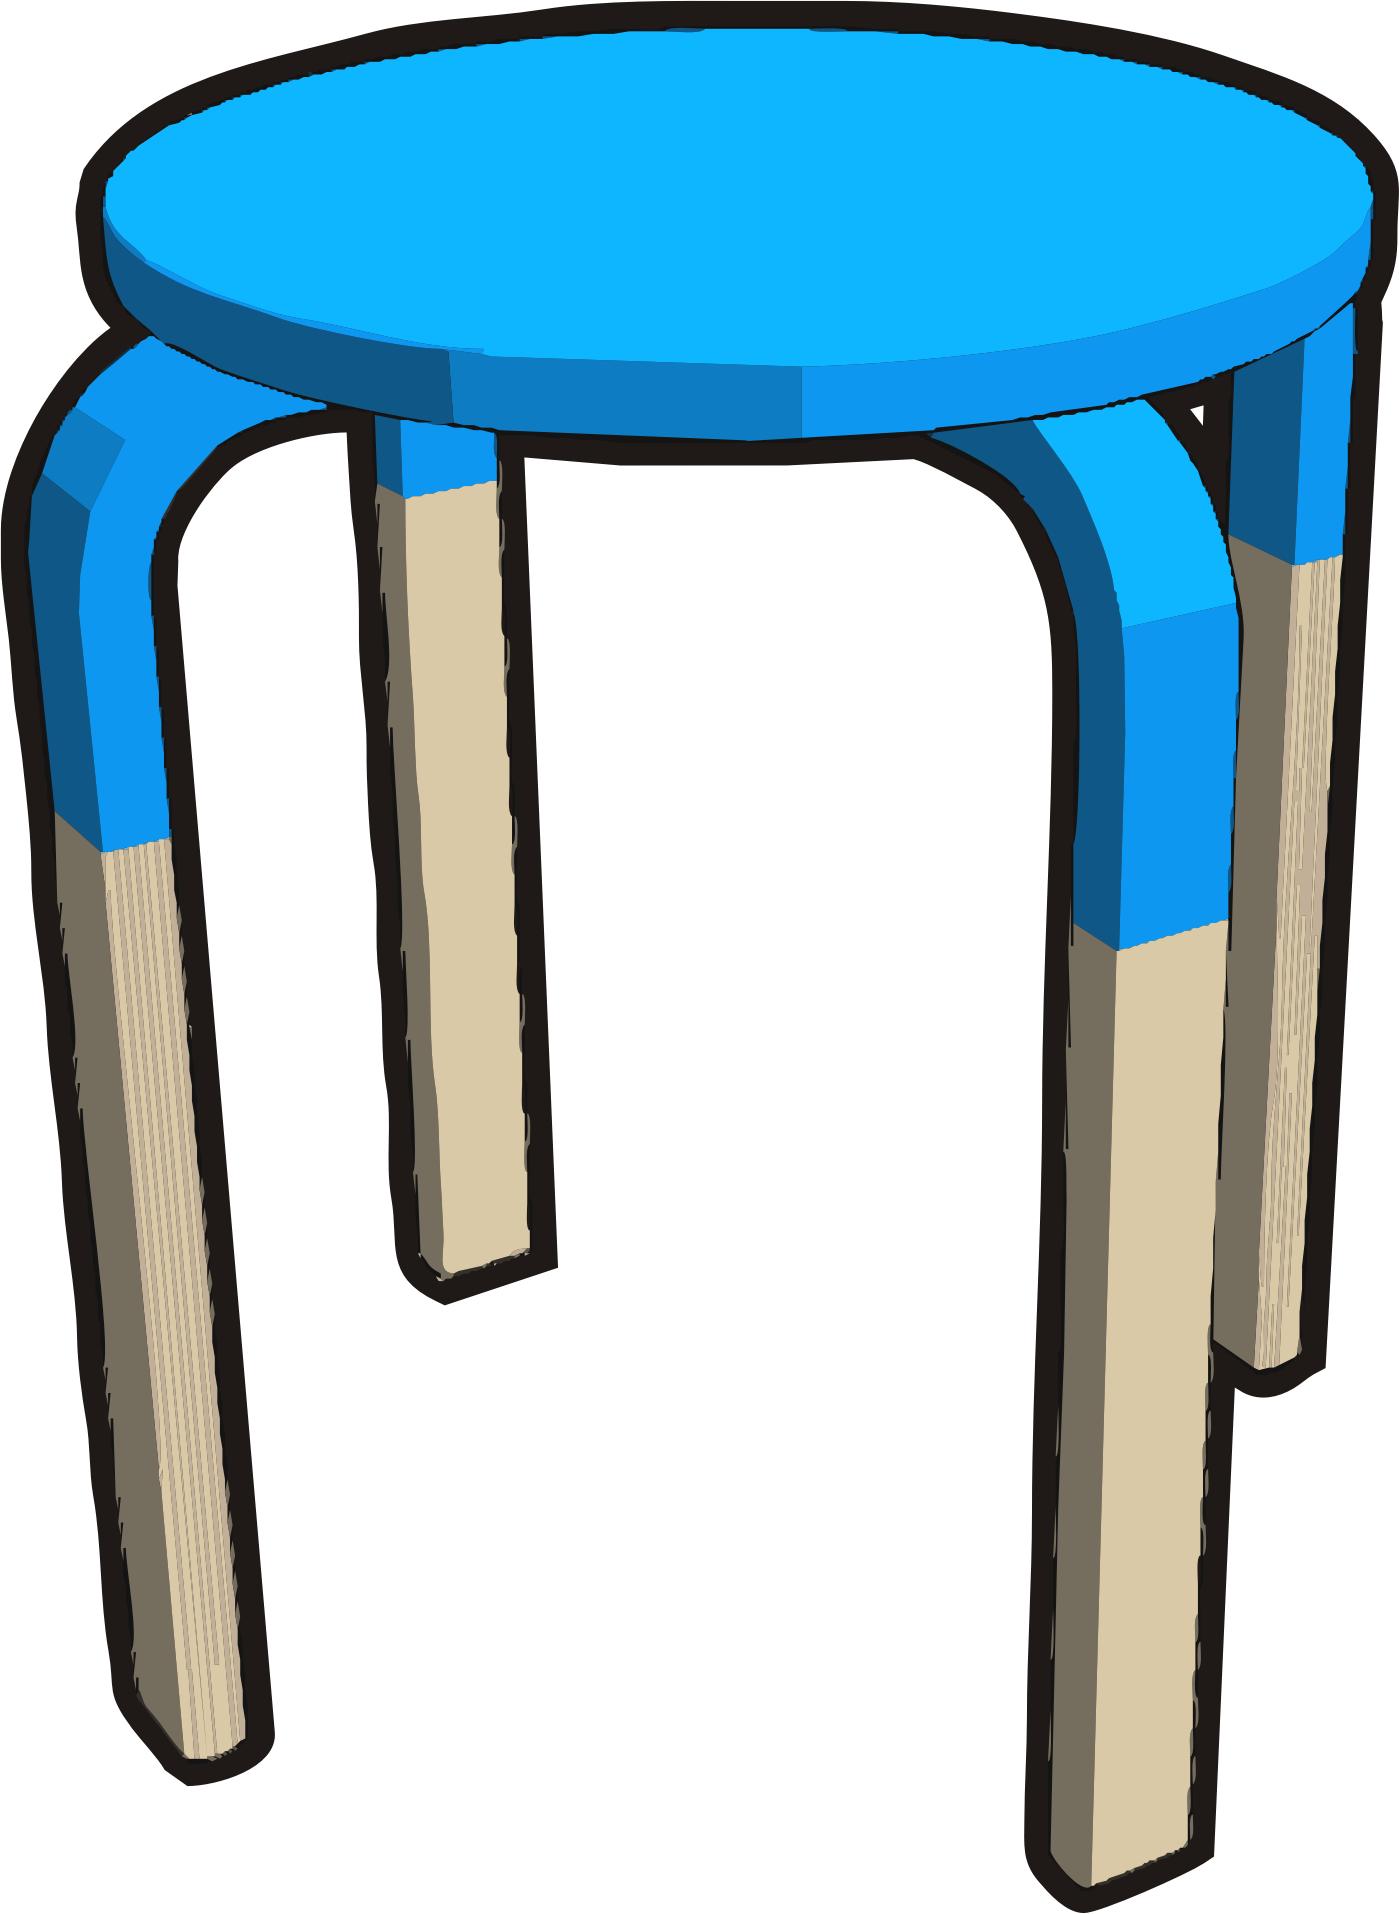 Ikea stuff - Frosta stool, half cyan png